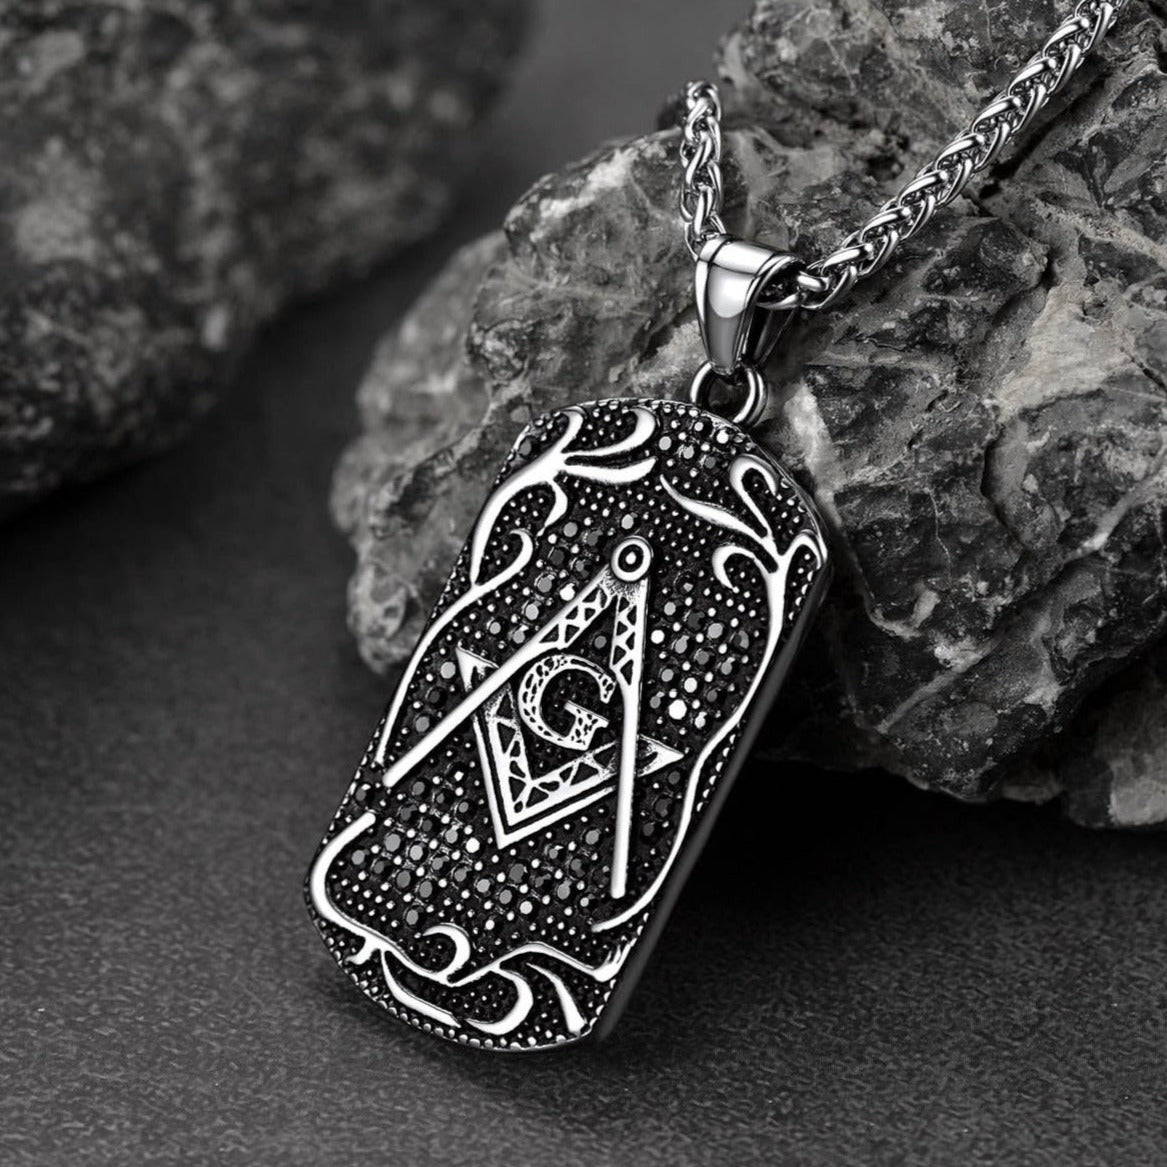 FaithHeart Freemason Pendant Necklace Stainless Steel Masonic Jewelry FaithHeart